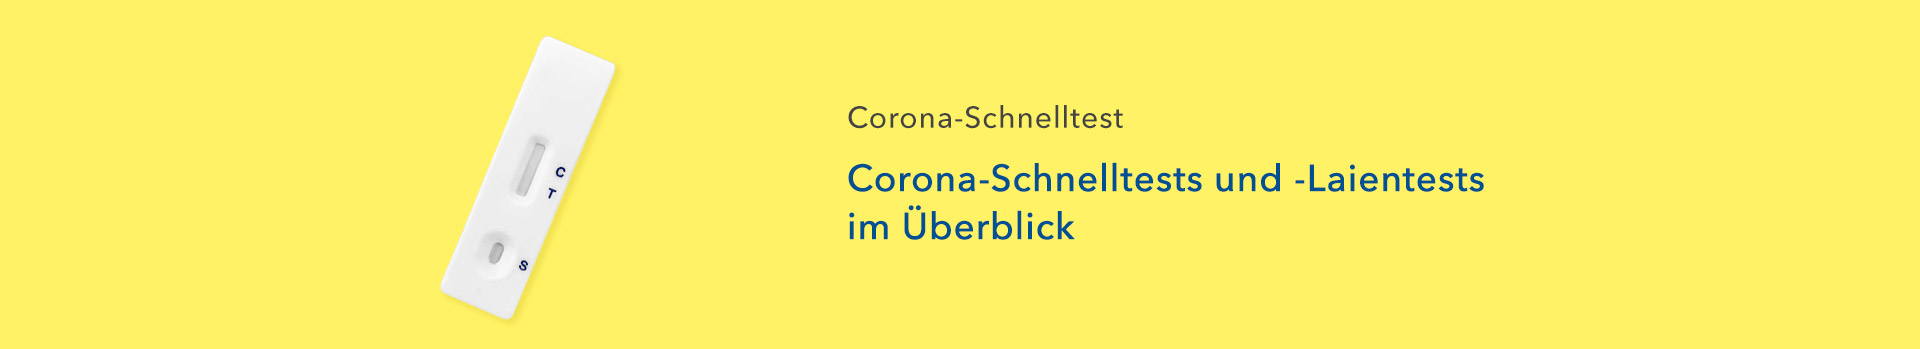 Corona-Schnelltests und -Laientests im Überblick - shop-apotheke.com